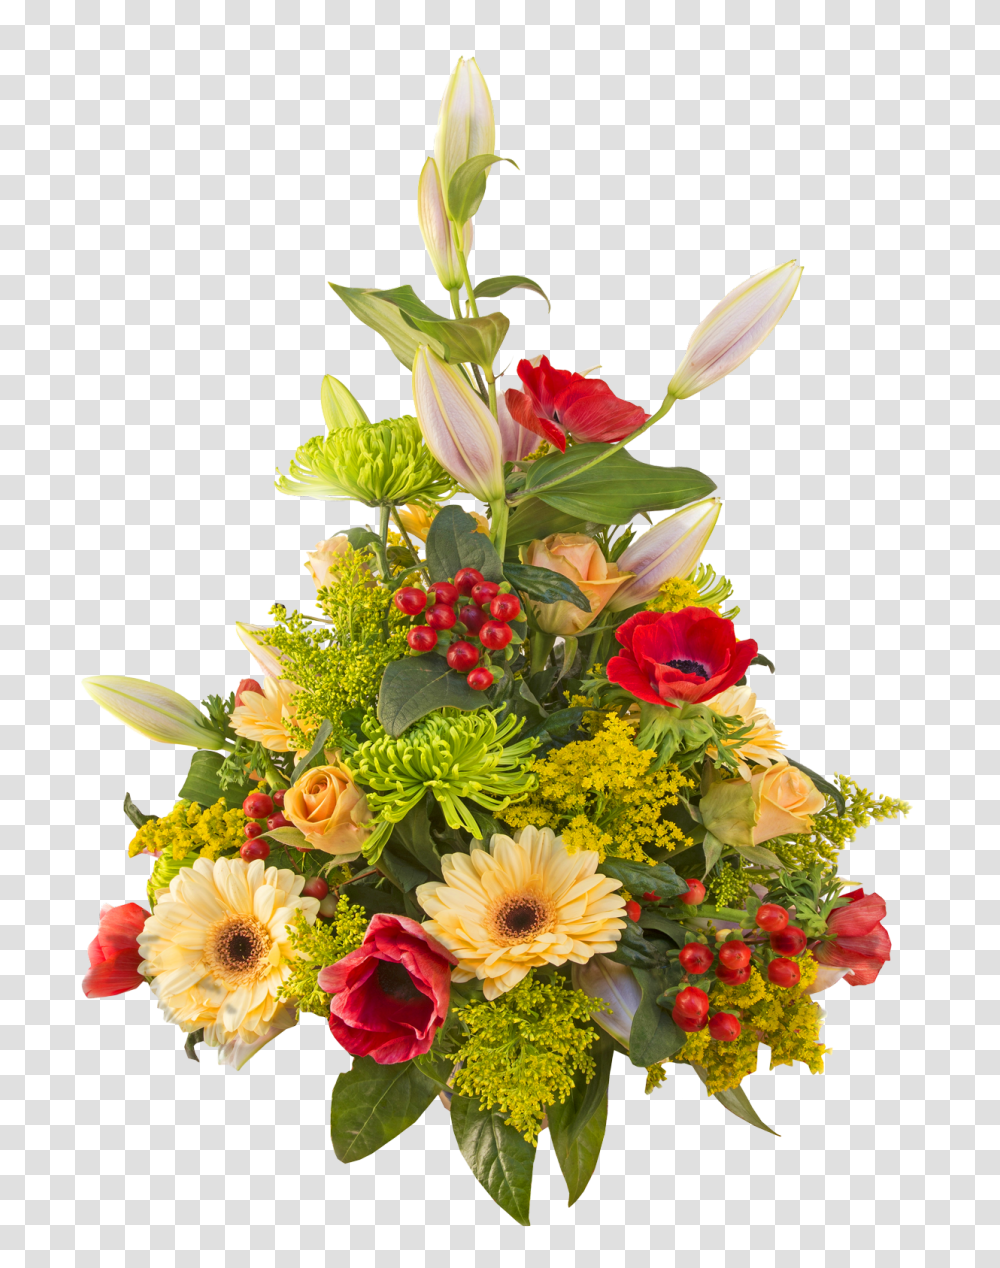 Flower Bouquet Image, Plant, Floral Design Transparent Png